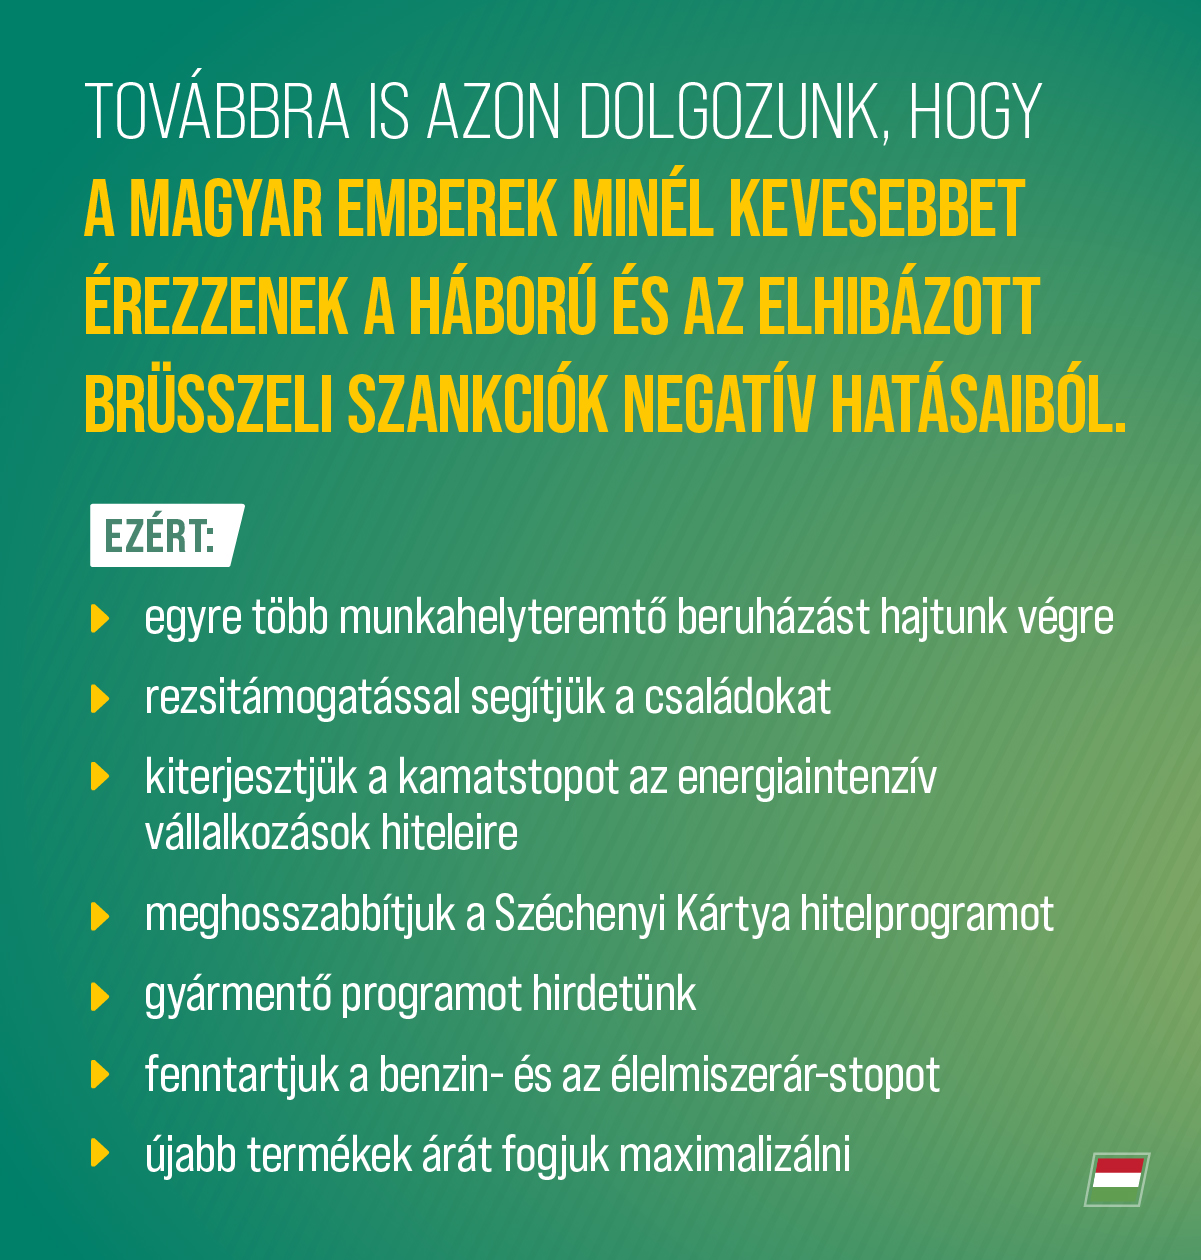 A szankciós infláció mellett is megvédjük a magyar családokat, megőrizzük a munkahelyeket és a fizetések értékét.